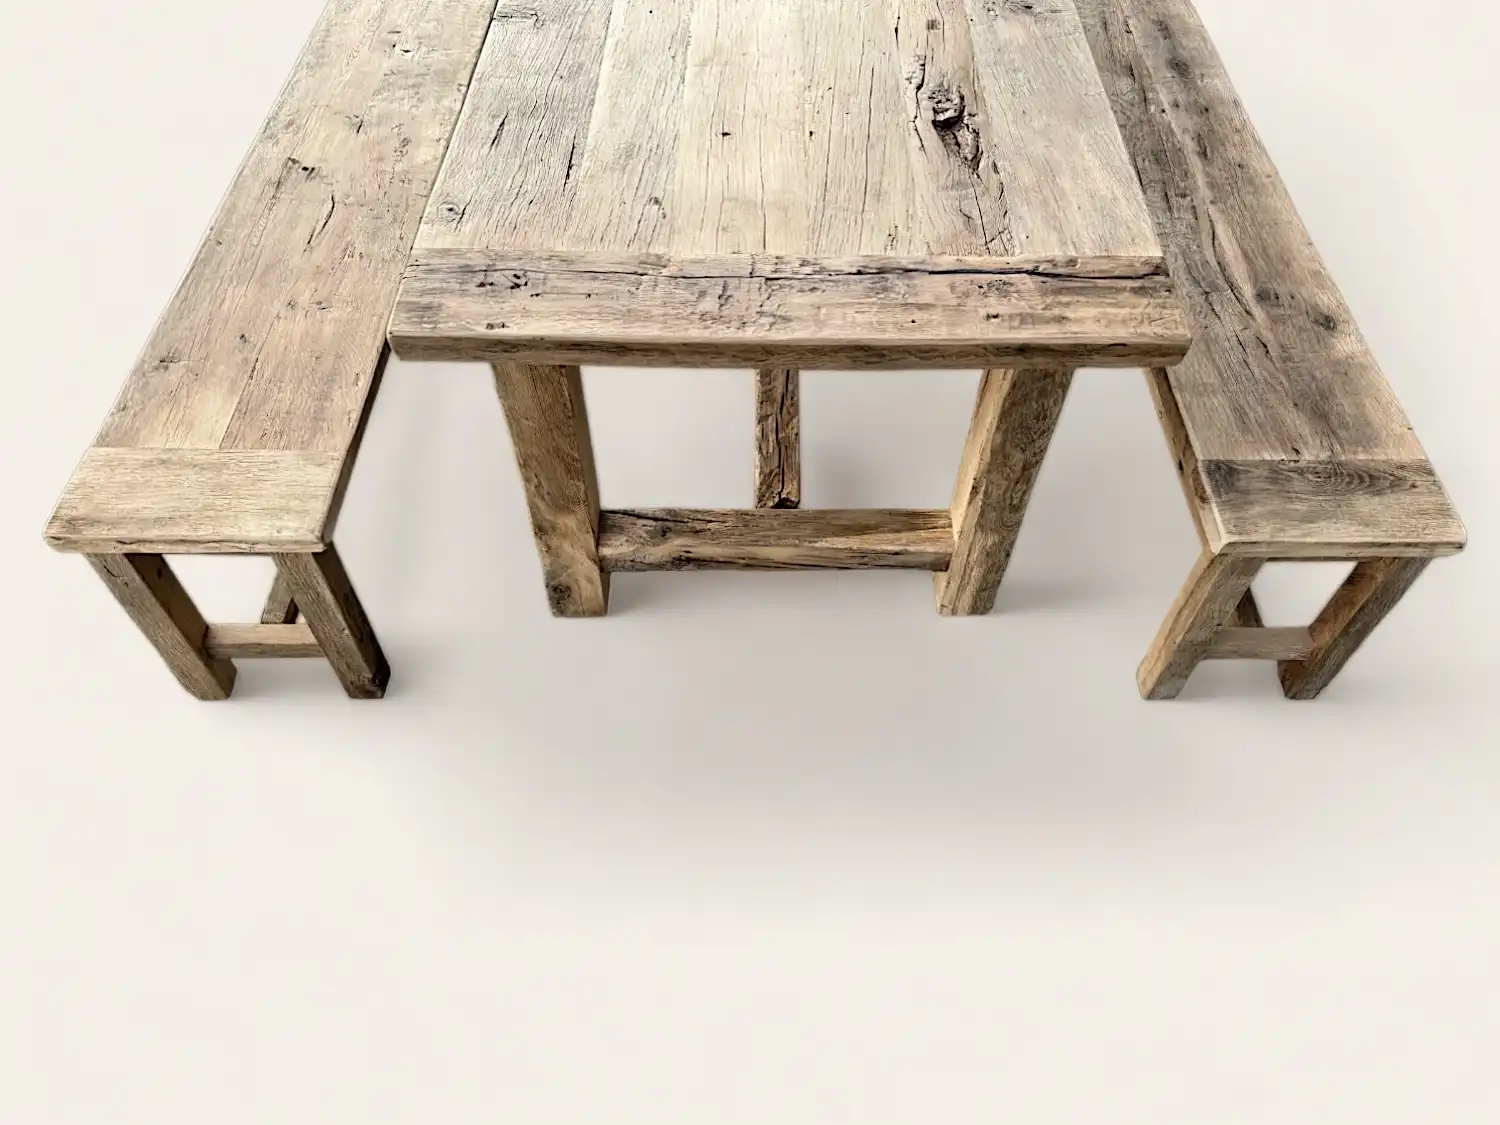 Une table à manger rustique style méditerranéen en bois ancien avec deux bancs.